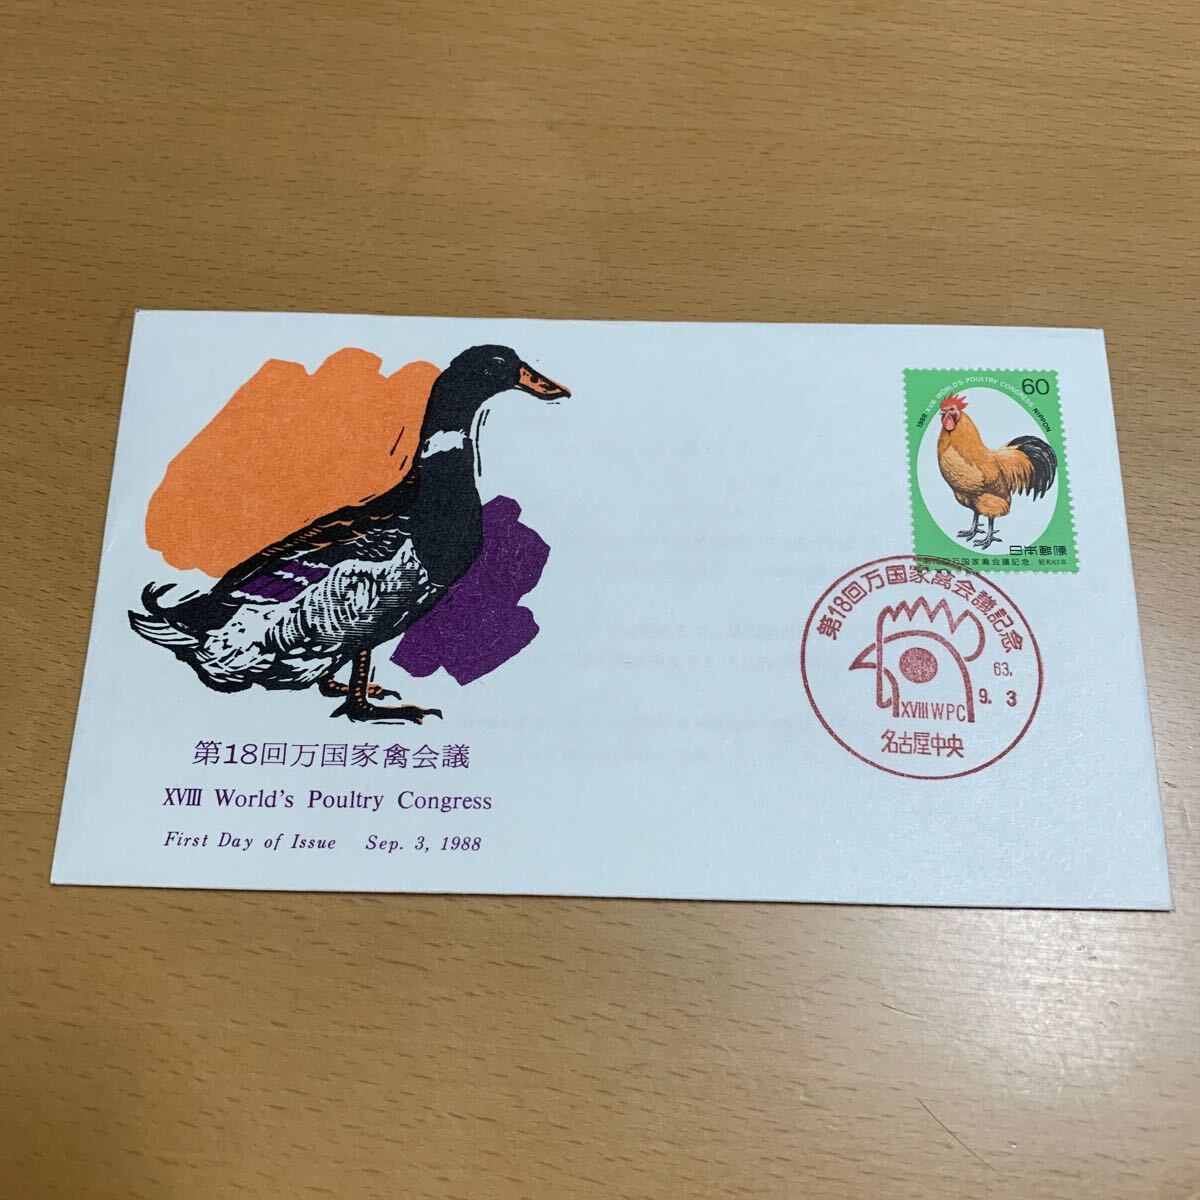 初日カバー 第18回万国家禽会議記念郵便切手 昭和63年発行の画像1